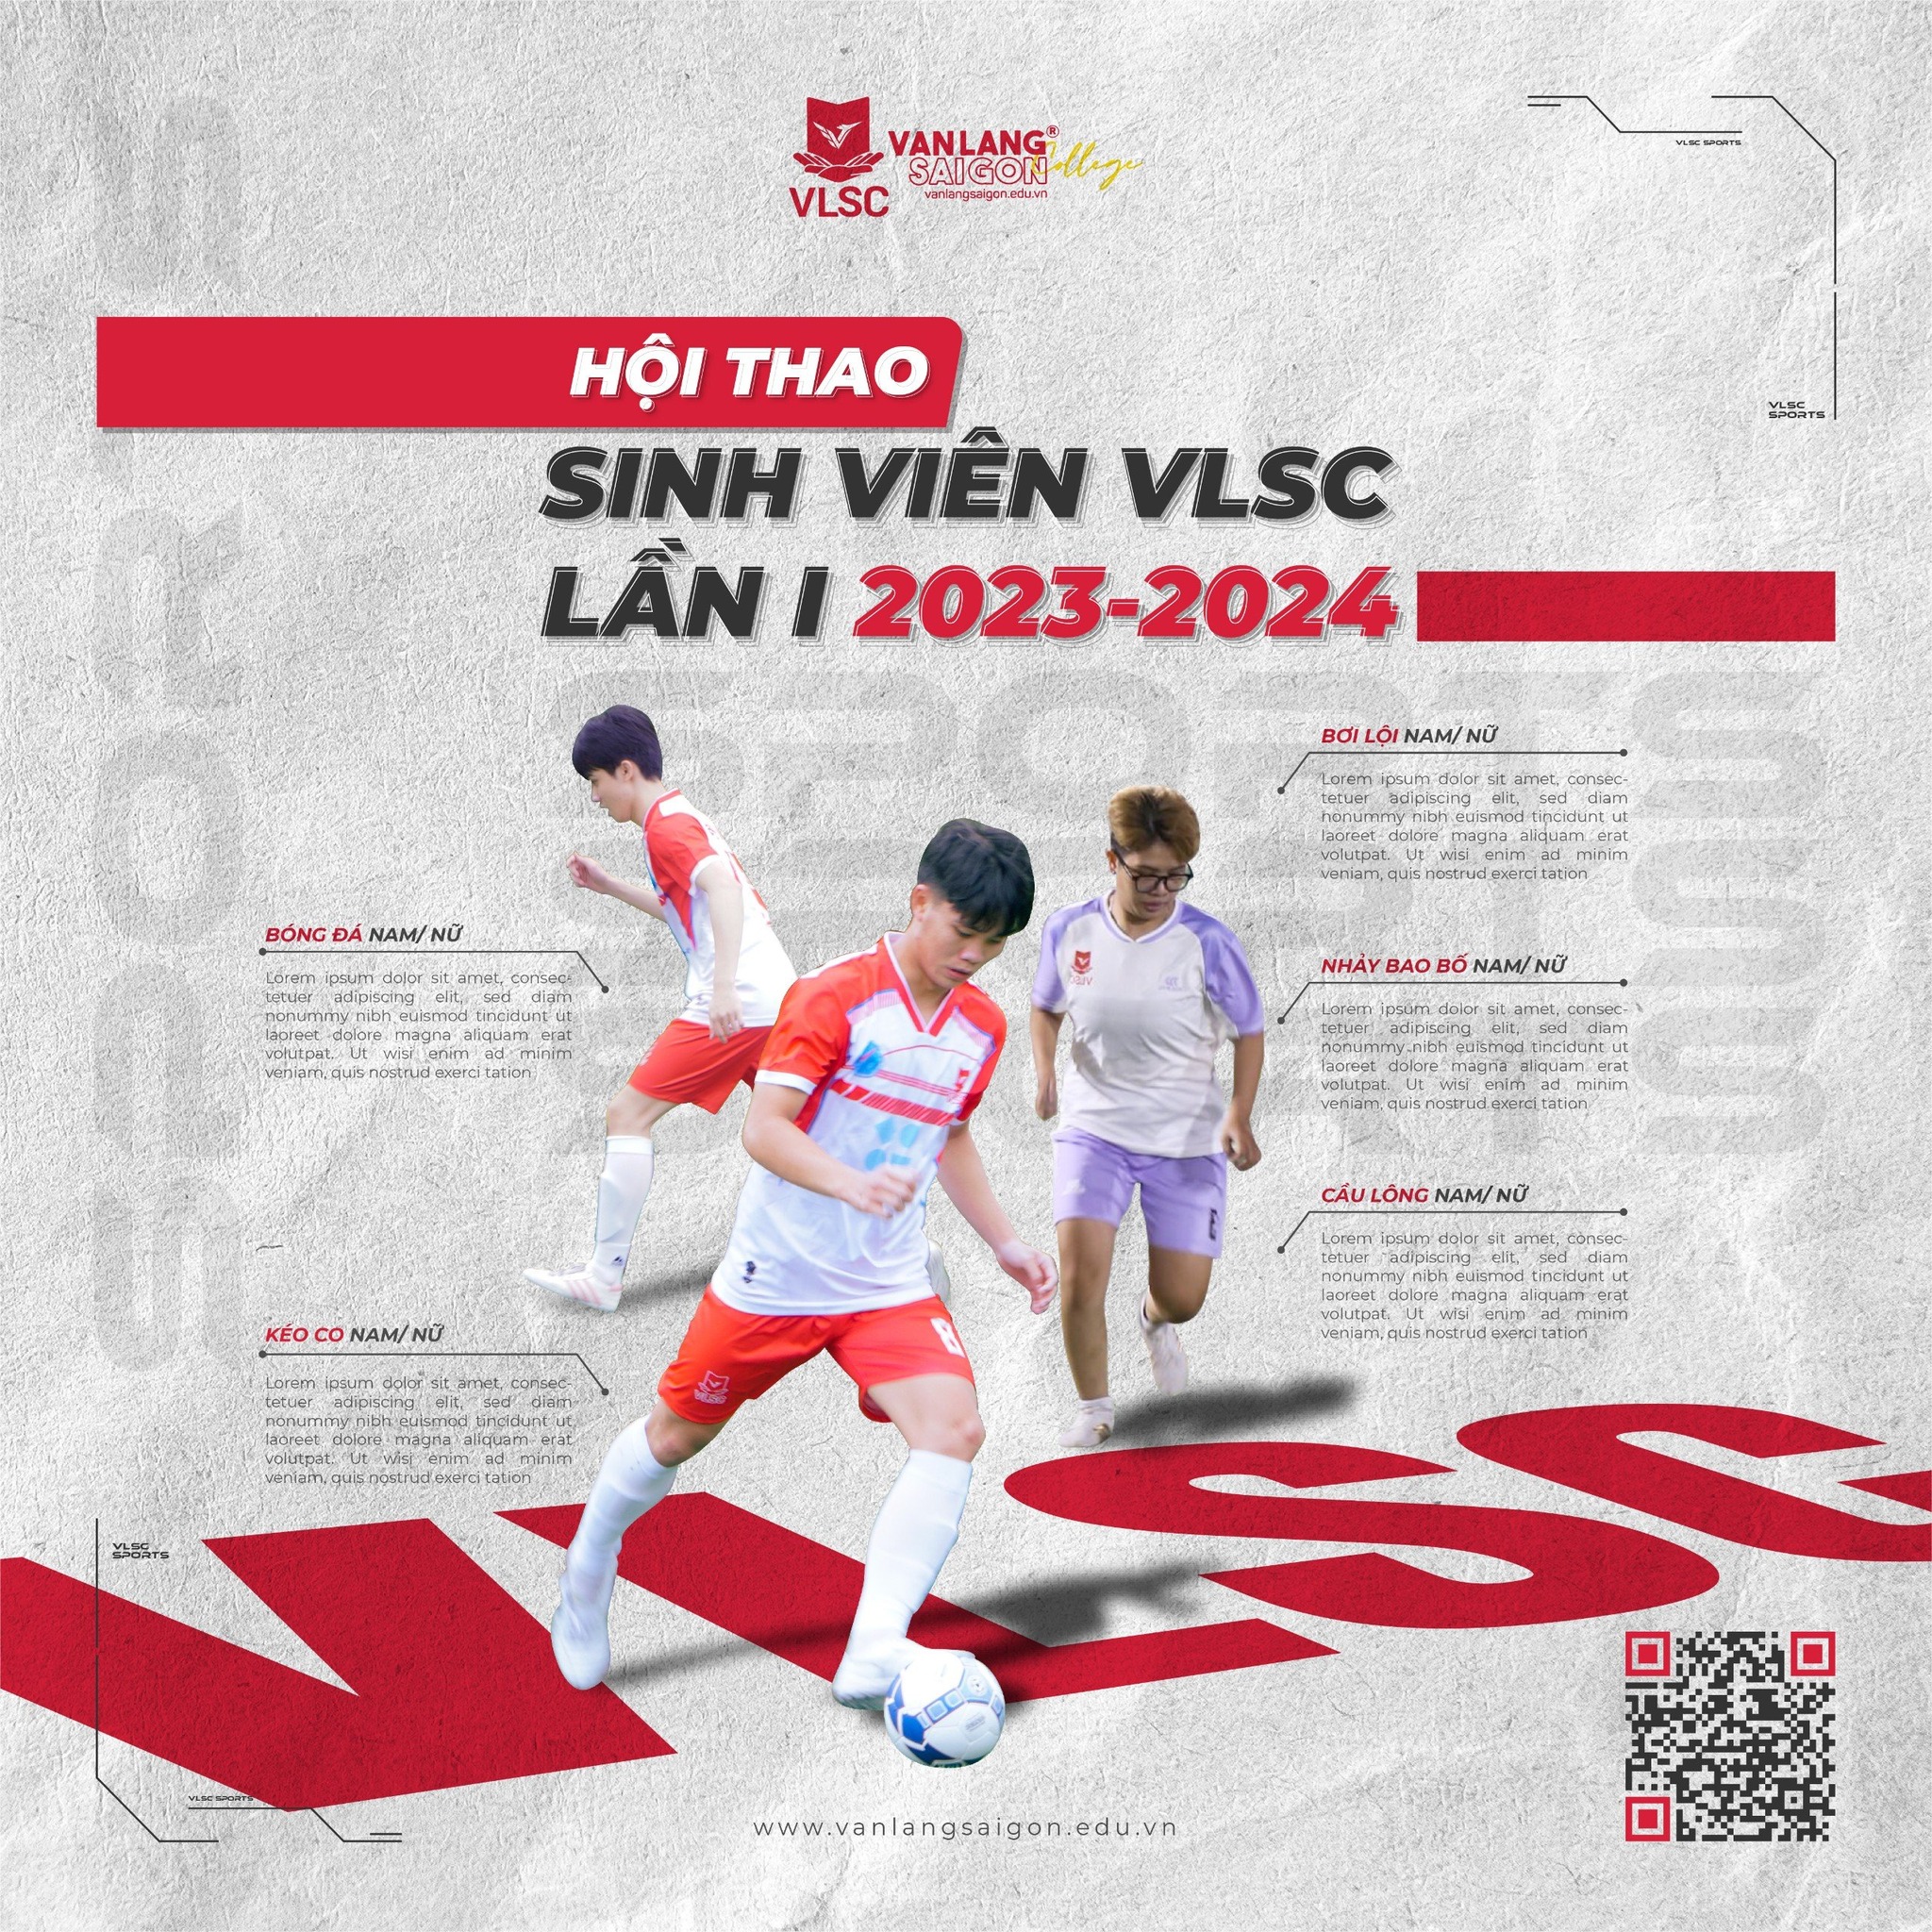 Hội thao sinh viên VLSC 2023 - 2024 chính thức khởi động